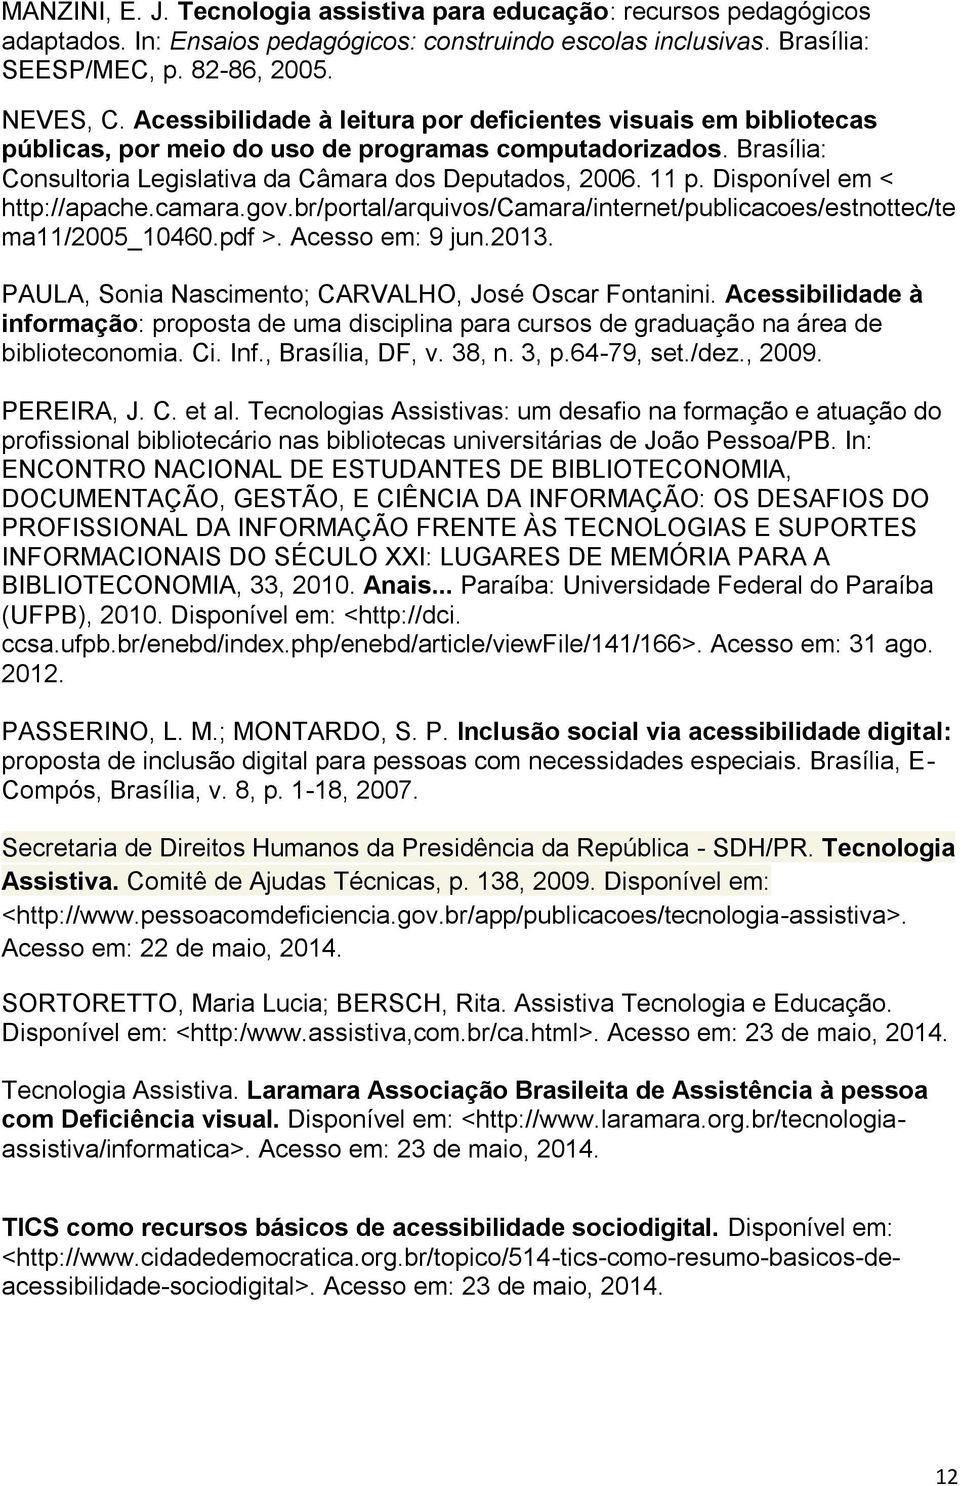 Disponível em < http://apache.camara.gov.br/portal/arquivos/camara/internet/publicacoes/estnottec/te ma11/2005_10460.pdf >. Acesso em: 9 jun.2013.